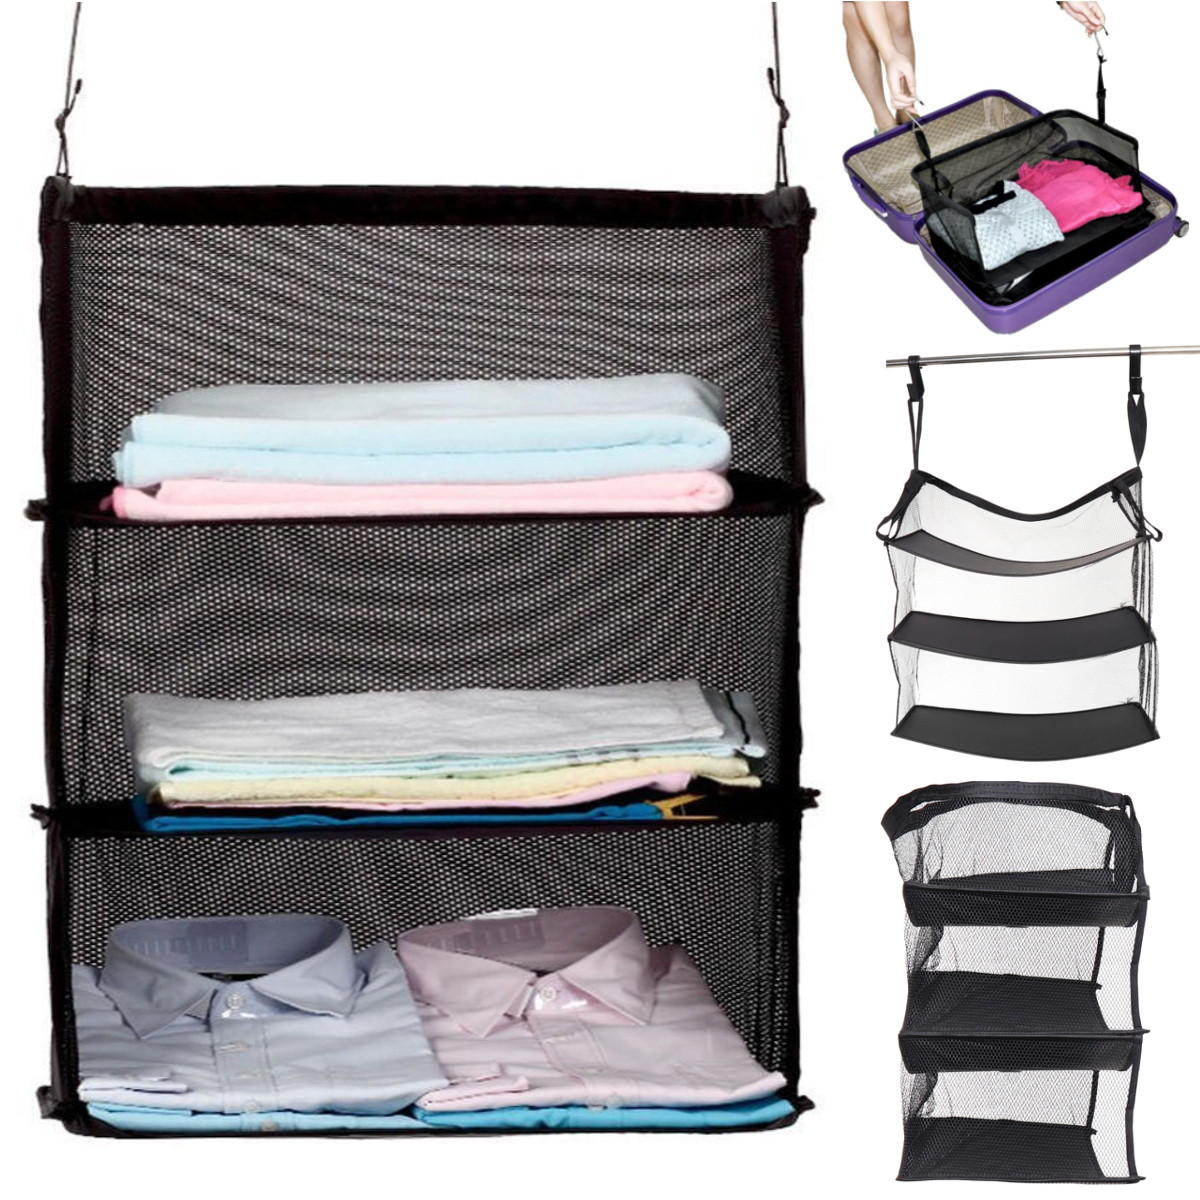 3 Layers Portable Travel Storage Baskets Bag Hook Hanging Nylon Mesh Bag Storage Organizer